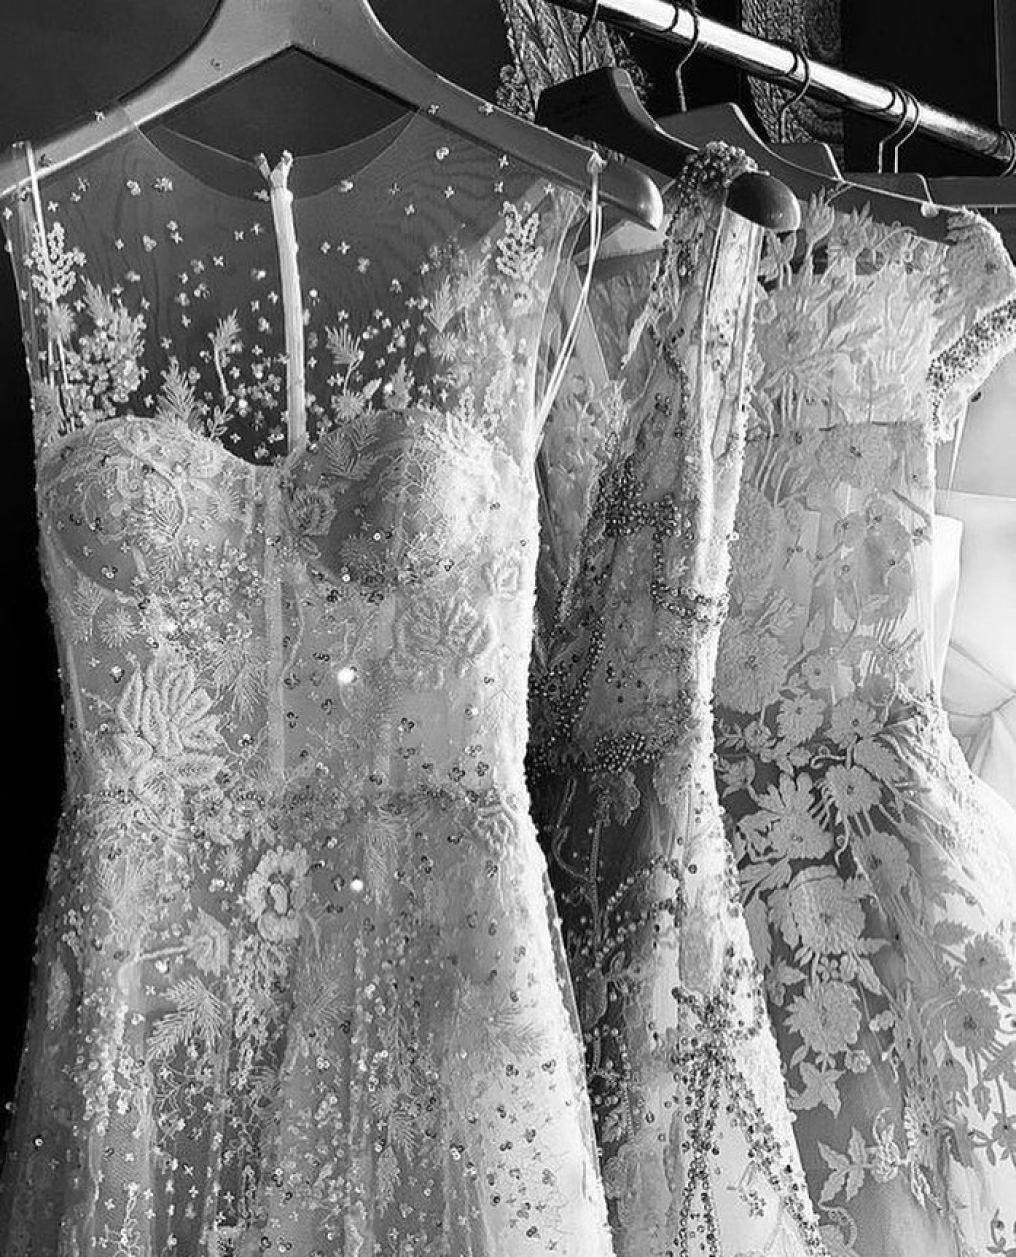 Reem Acra Bridal Salon photo